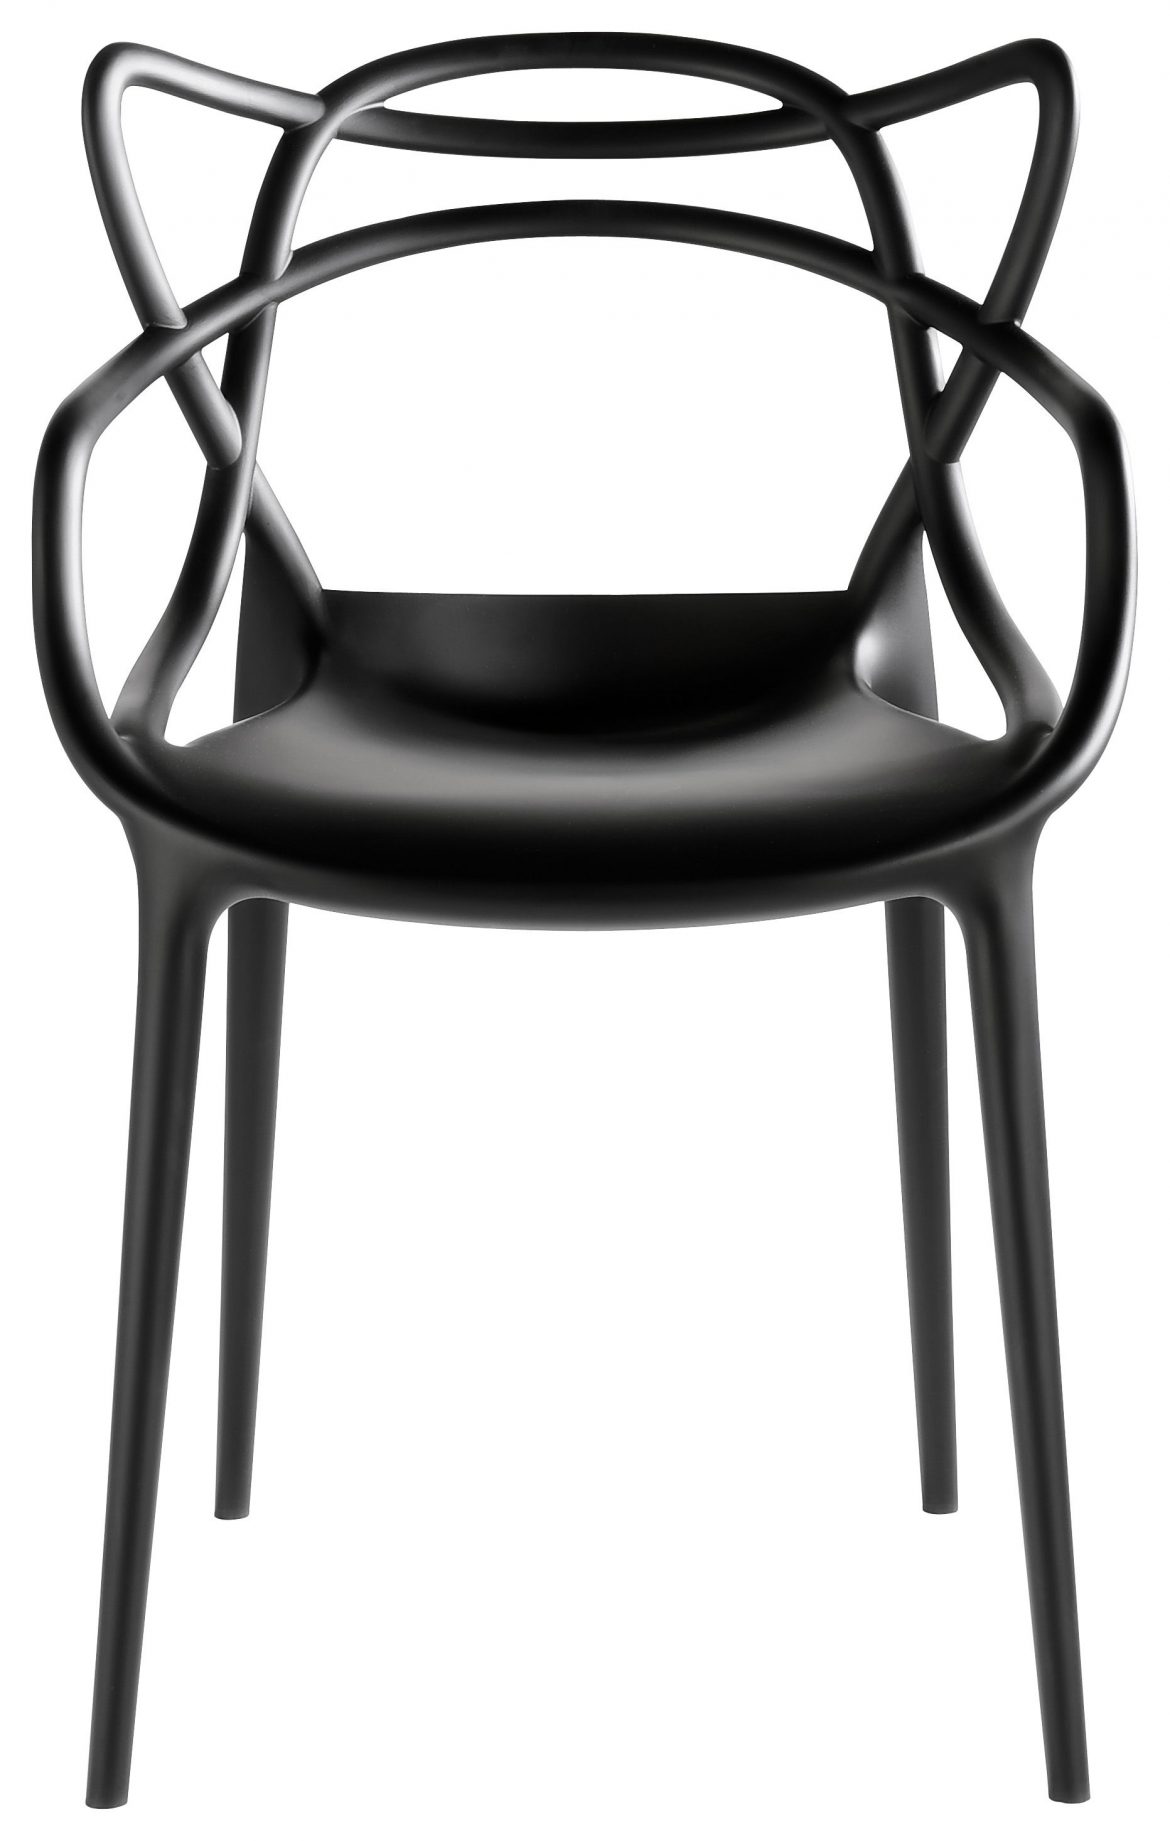 De Kartell Master stoel sluit perfect aan op de minimalistische woonstijl. Verkrijgbaar bij Vesta in het Woonforum.